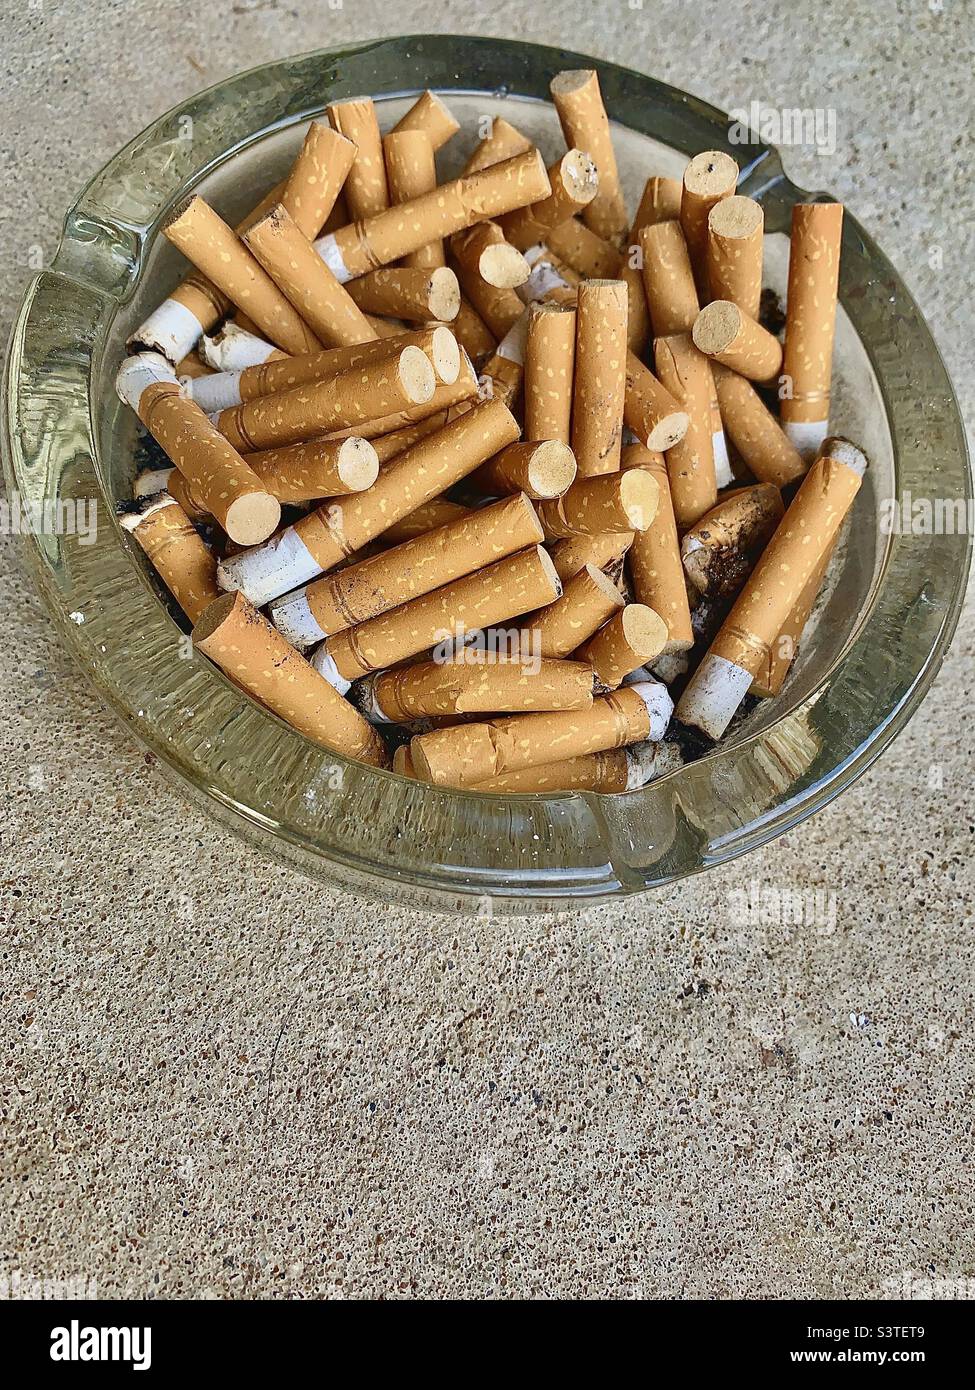 Dirty ashtray Stock Photo